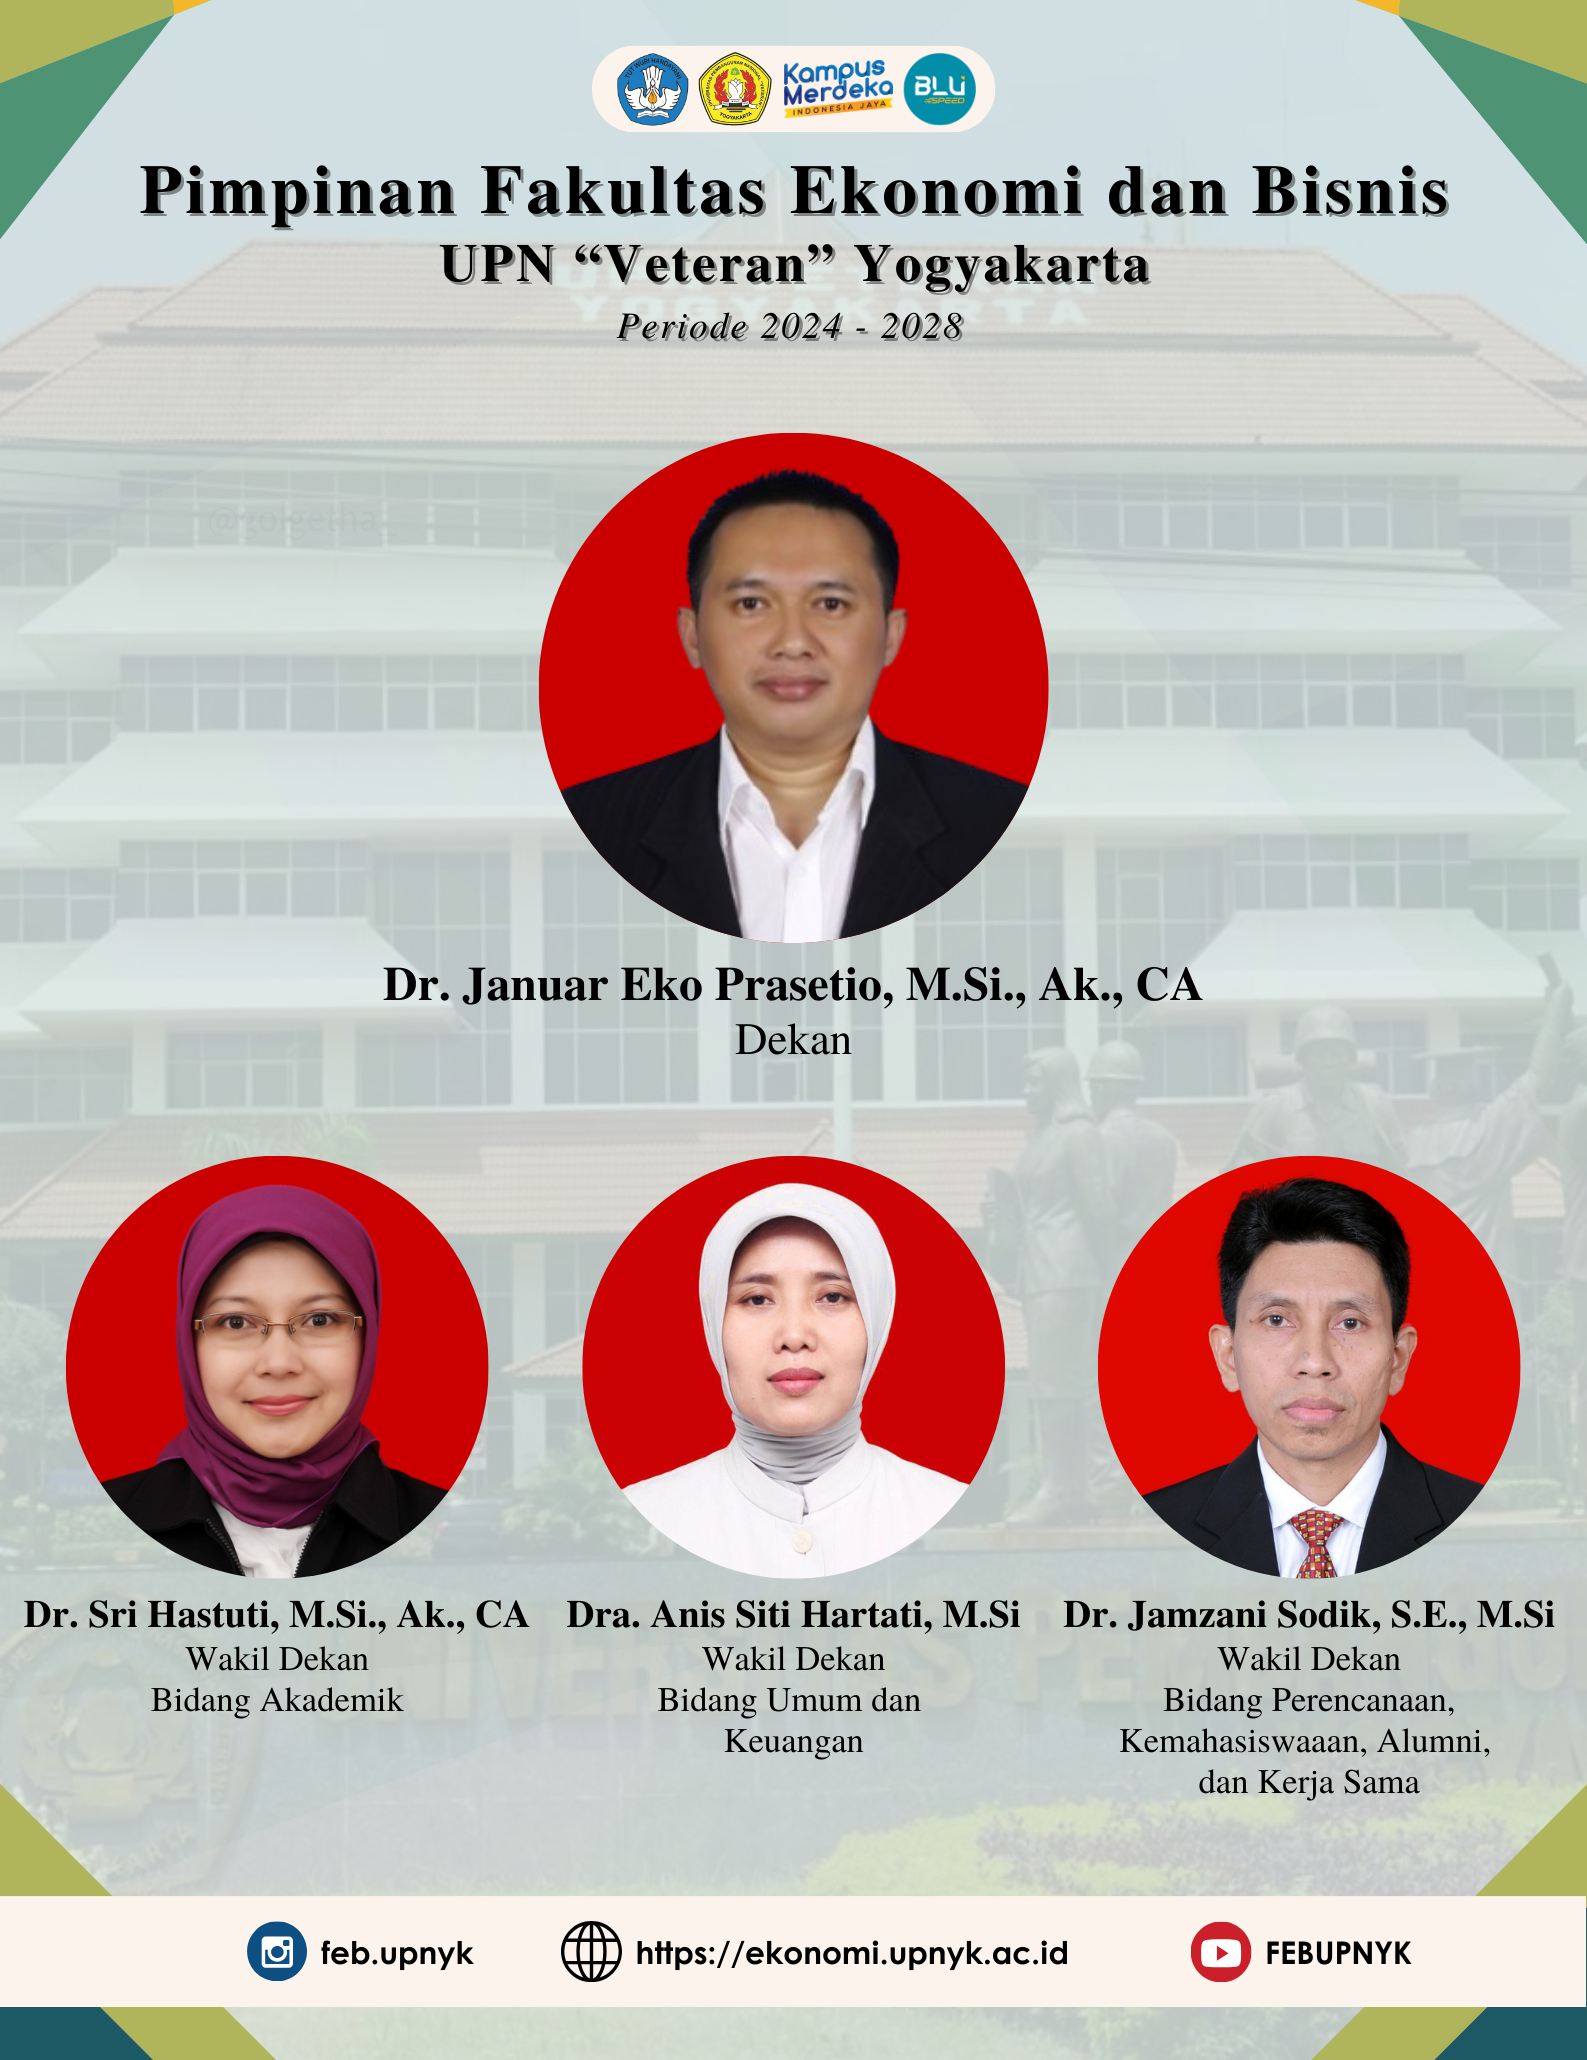 Pimpinan Fakultas Ekonomi dan Bisnis UPN "Veteran" Yogyakarta Periode 2024 - 2028